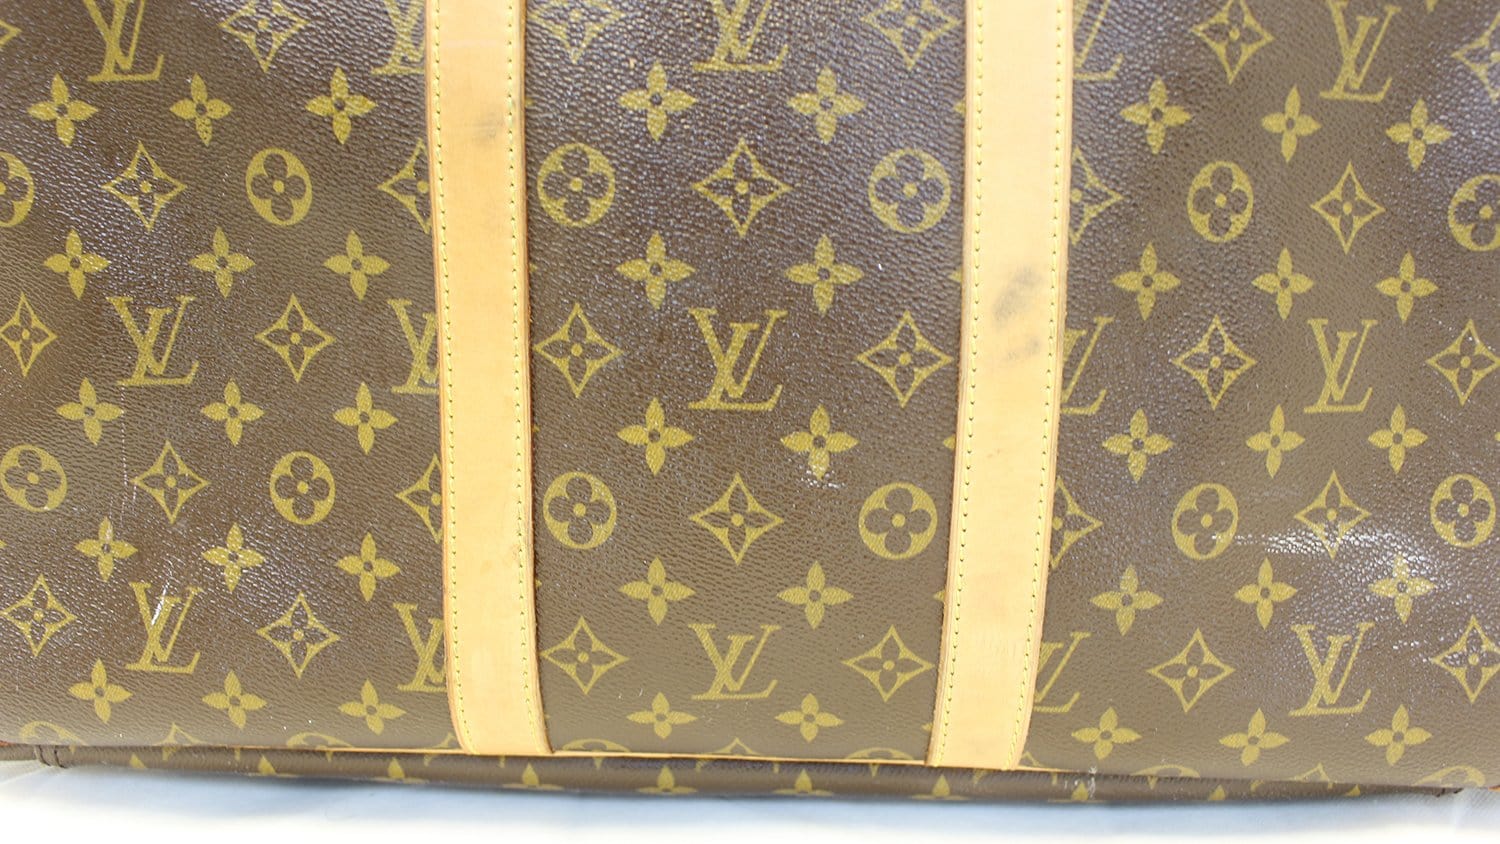 Louis Vuitton Sirius 55 Boston Bag Travel Bag Brown Monogram